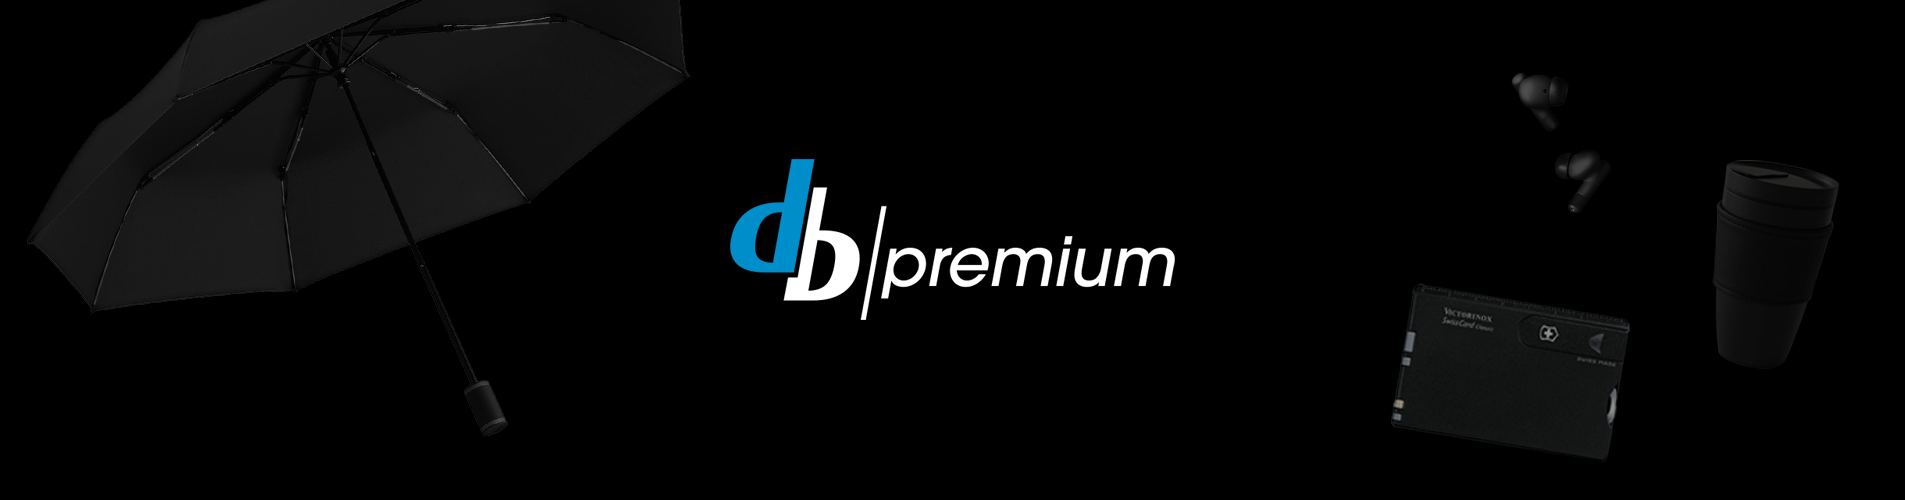 db-premium Headerbild